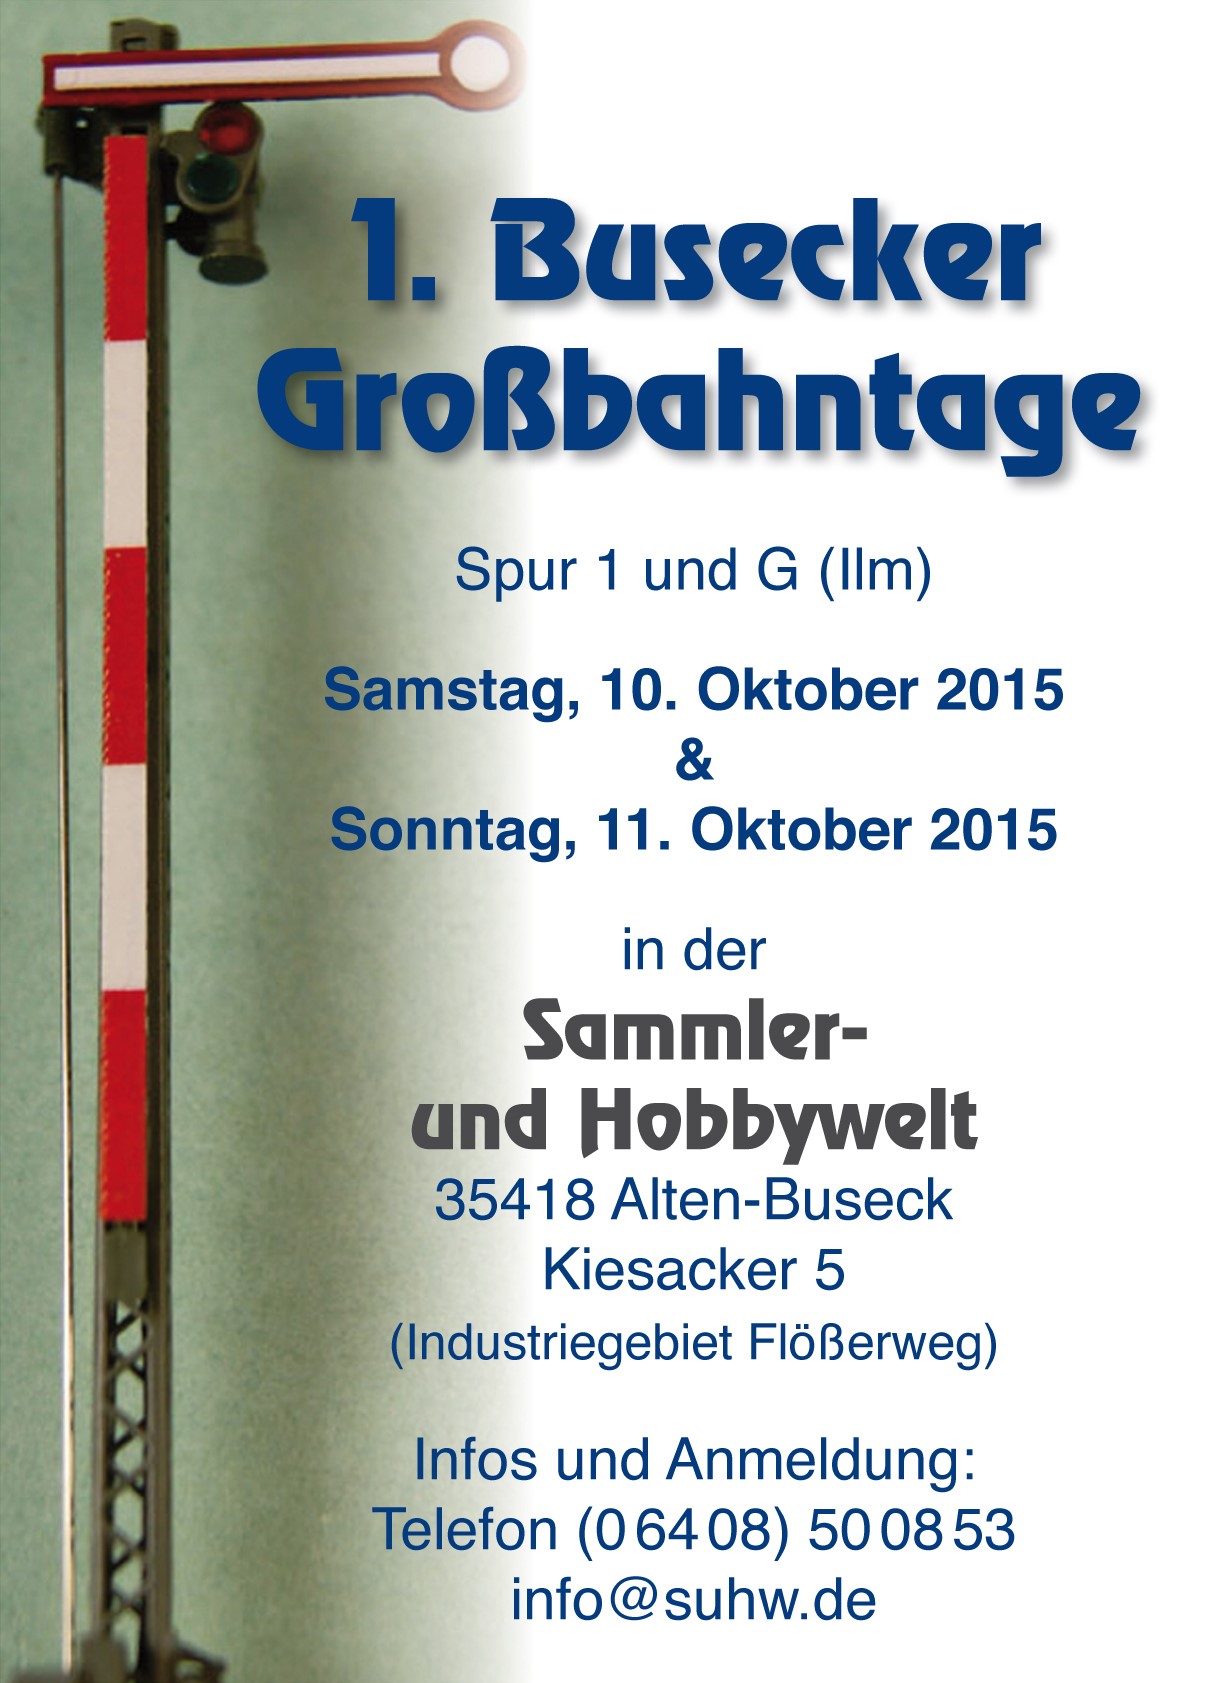 1. Busecker Großbahntage am Wochenende 10. und 11. Oktober 2015. 